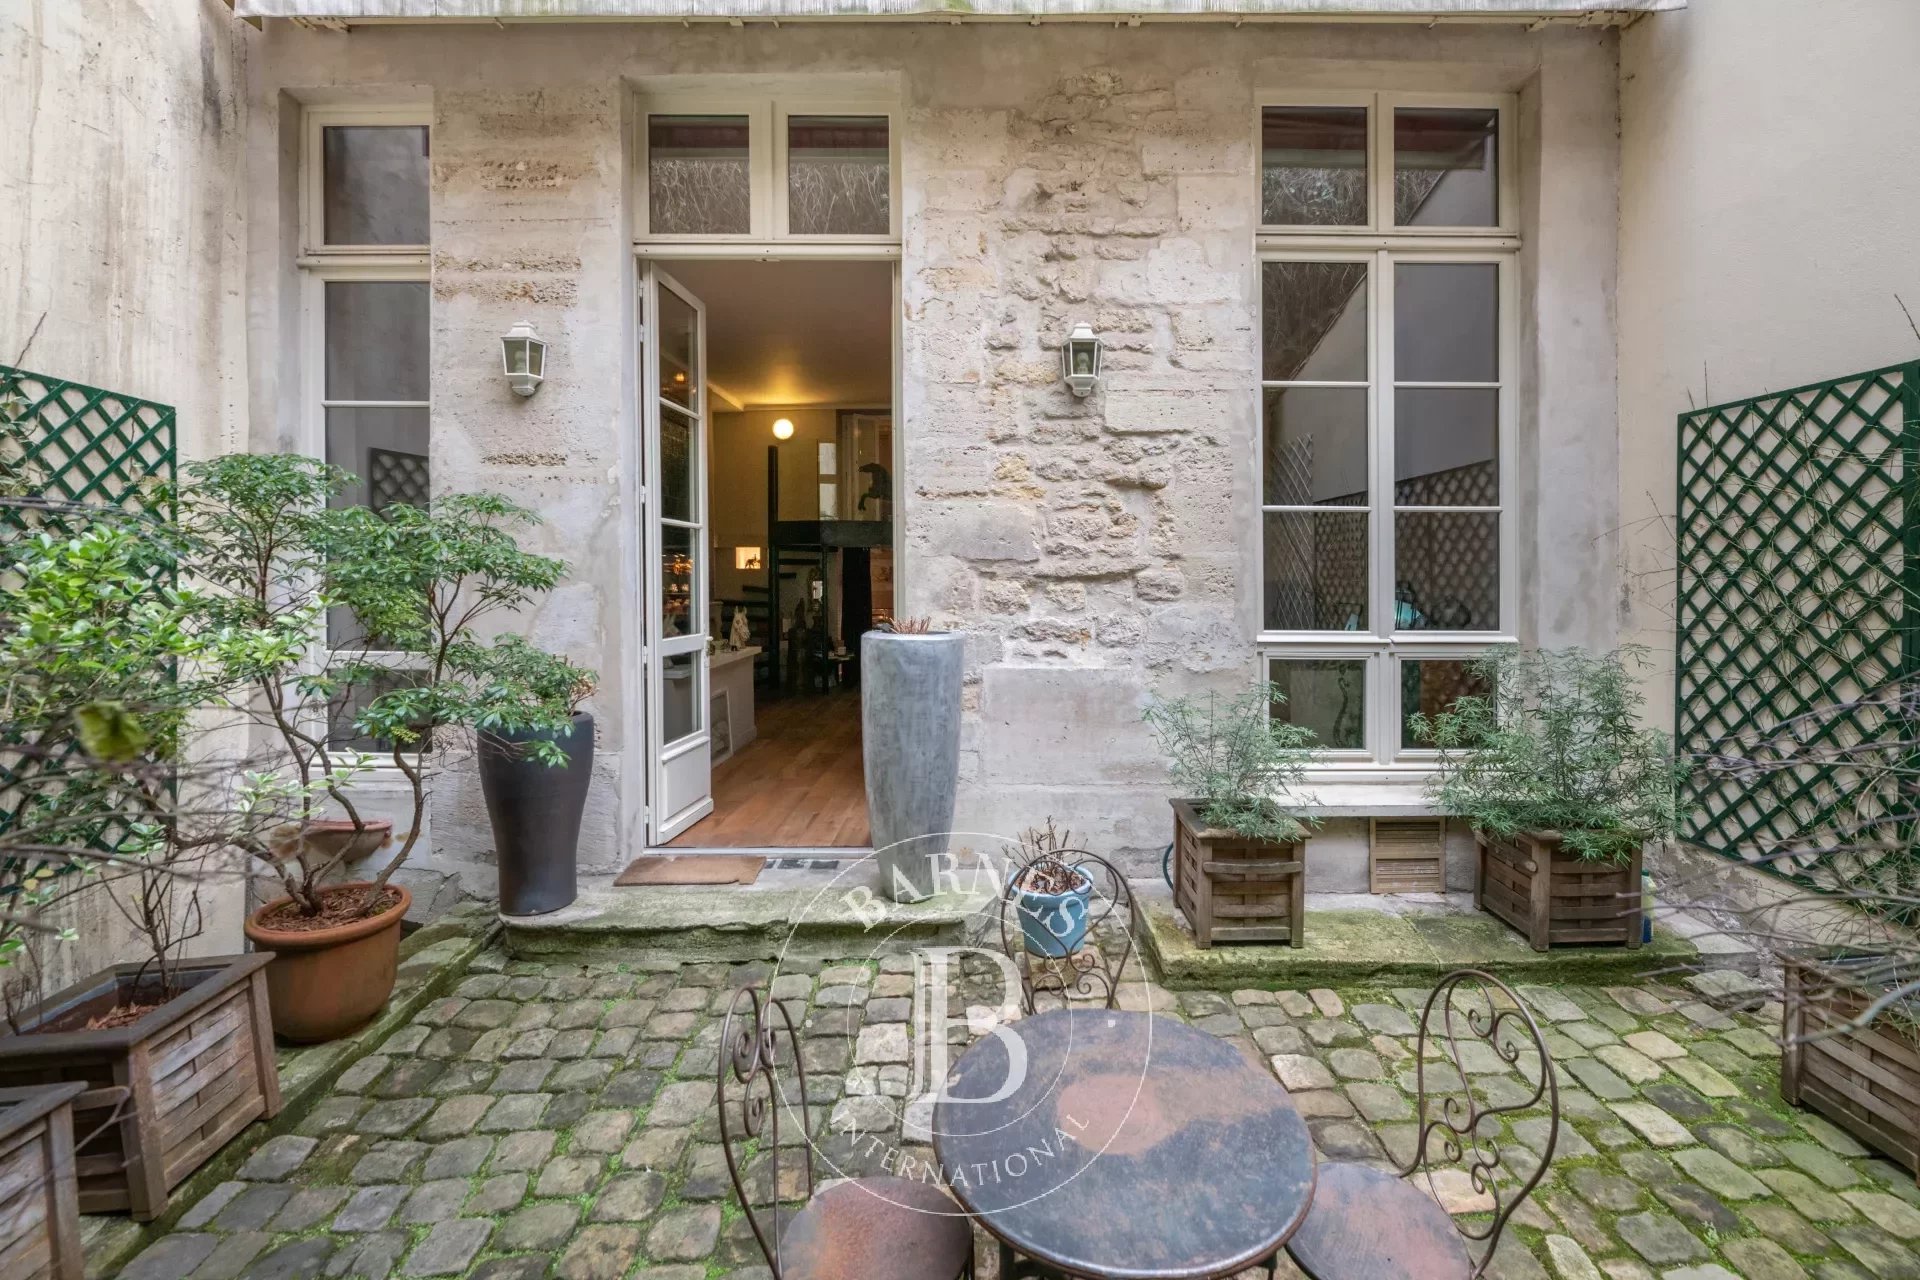 Vente appartement – Paris 3 – Enfants rouges – Comme une maison - Jardin - Exclusivité